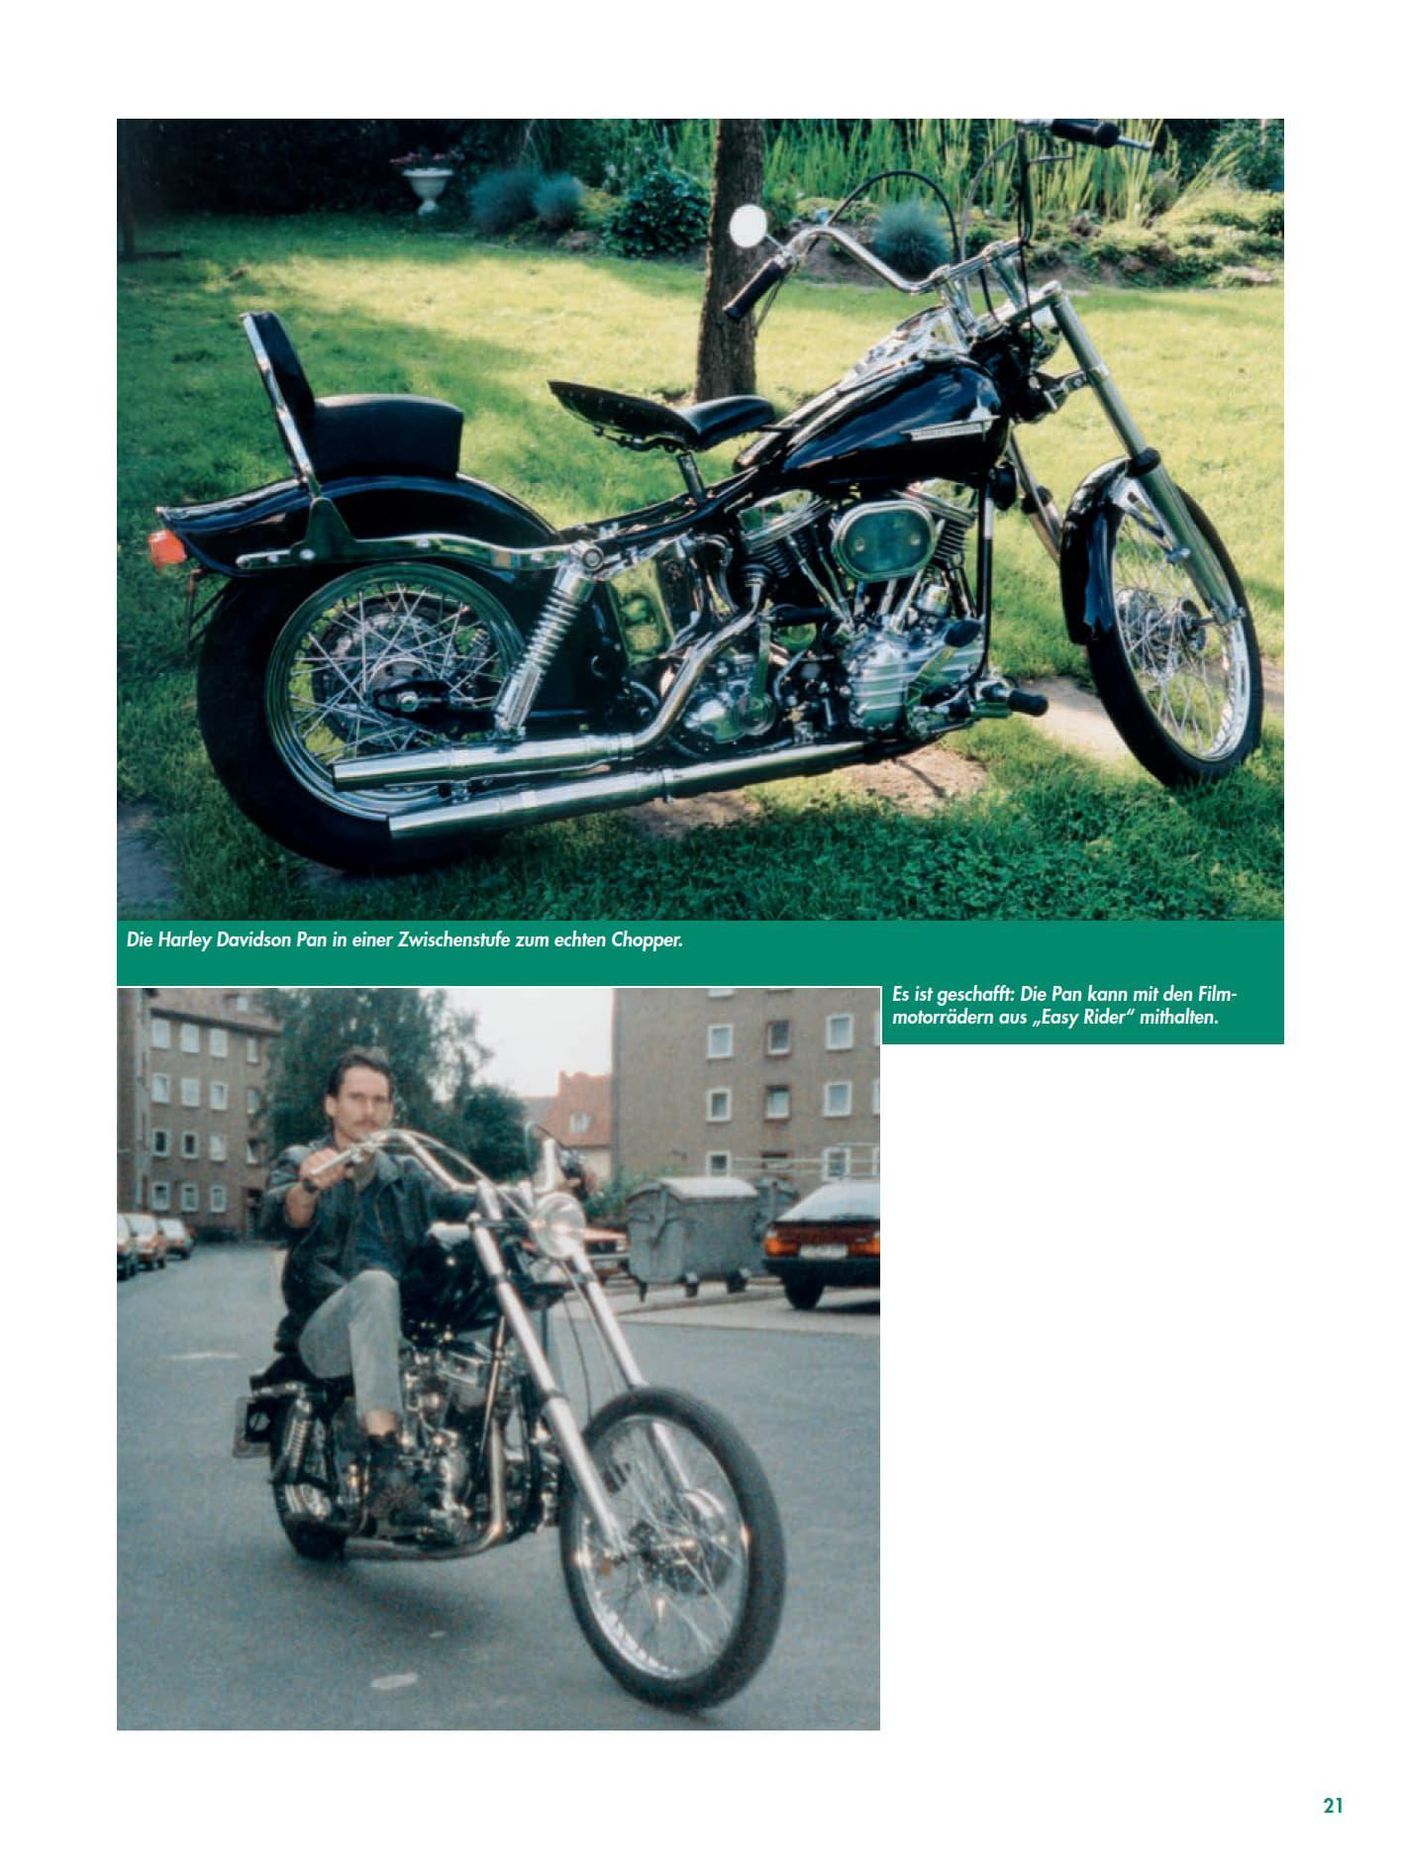 Freiheit auf zwei Rädern - Motorräder der 50er - 80er Jahre Buch